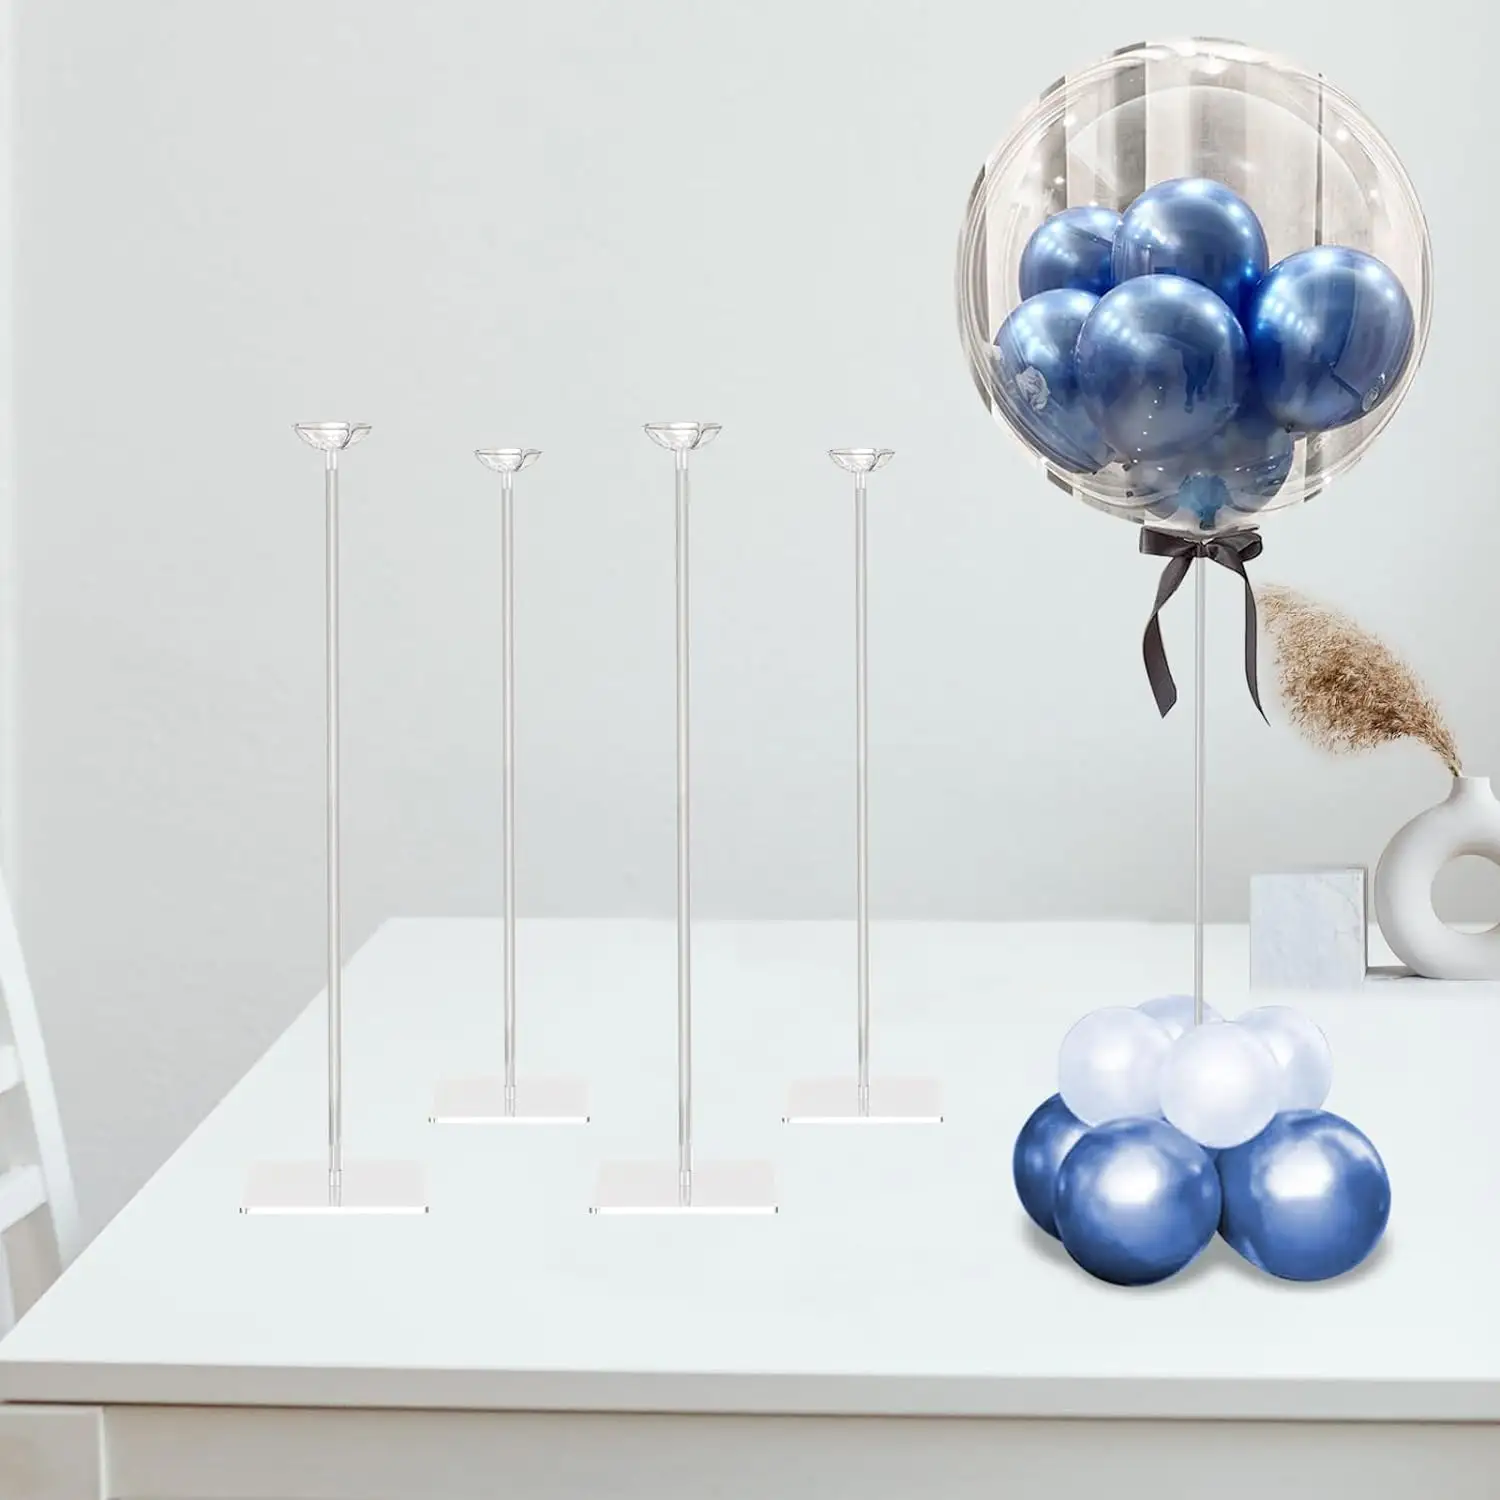 Подставка для воздушных шаров из прозрачного акрила высотой 23,6 дюймов для украшения стола, набор из 4 штук